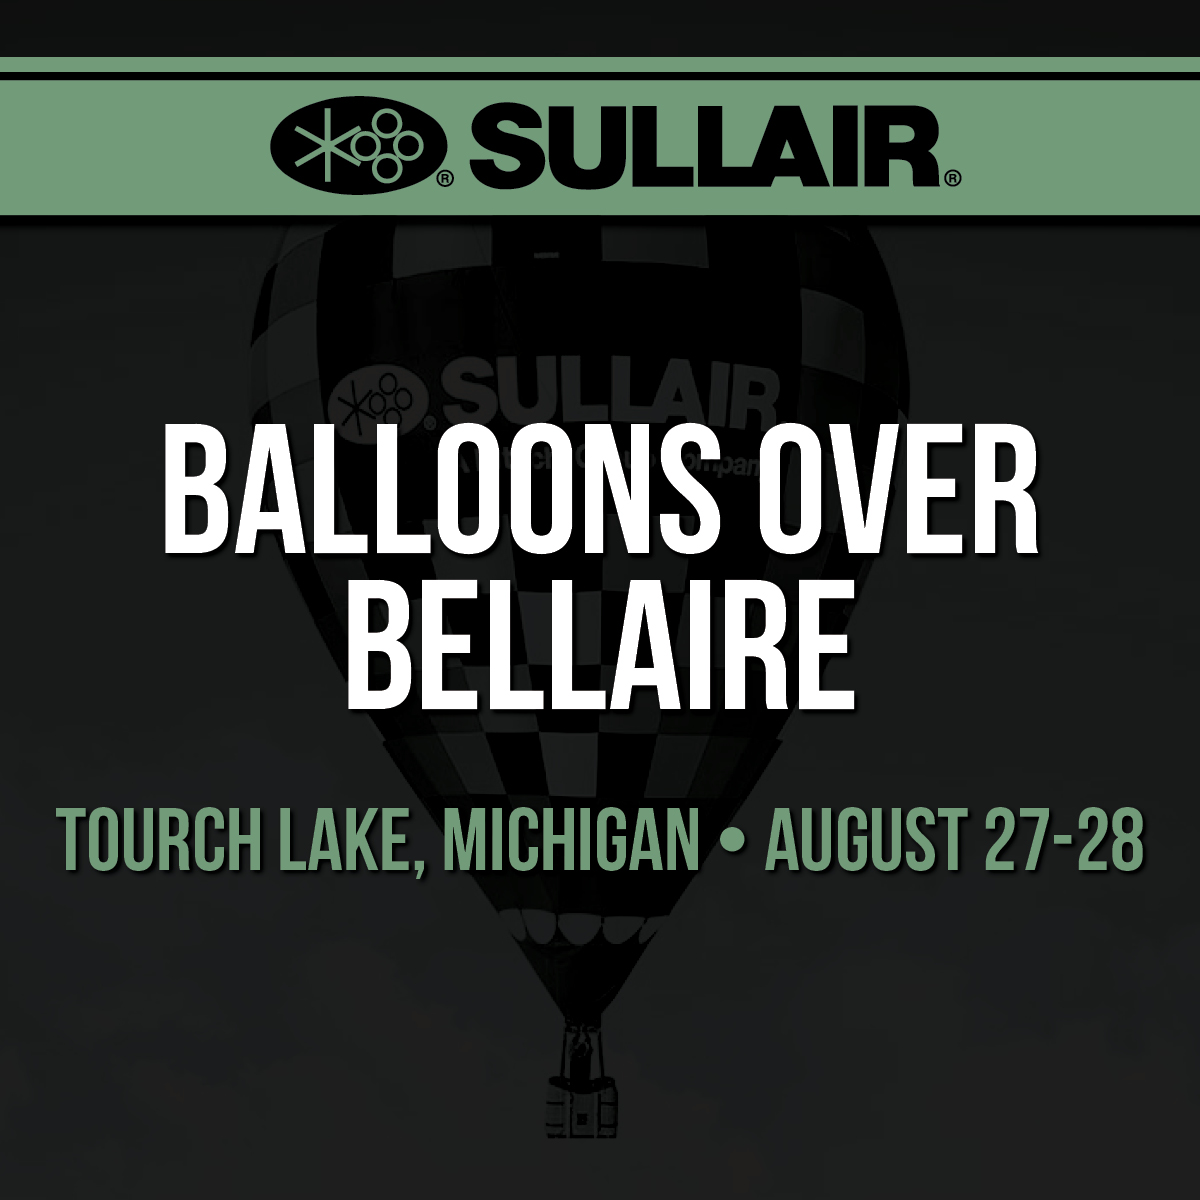 Balloons Over Bellaire Sullair